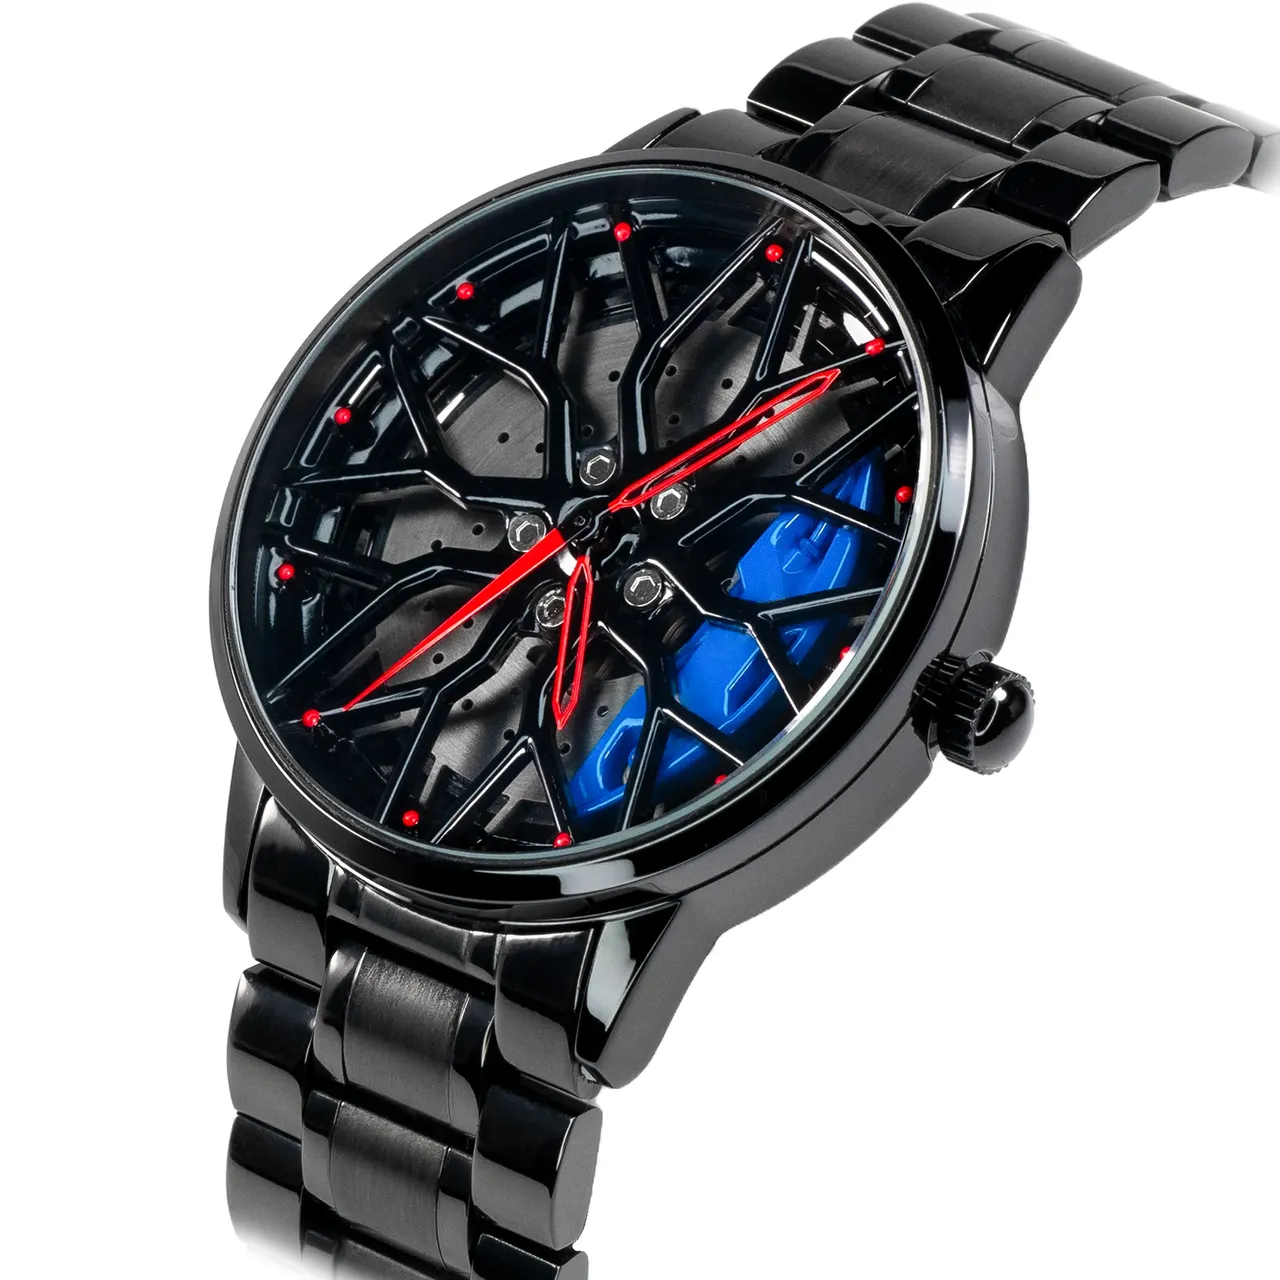 HMNWatch petronas g63 non-spinning rim watch, mercedes benz rim watch, benz wheel watch